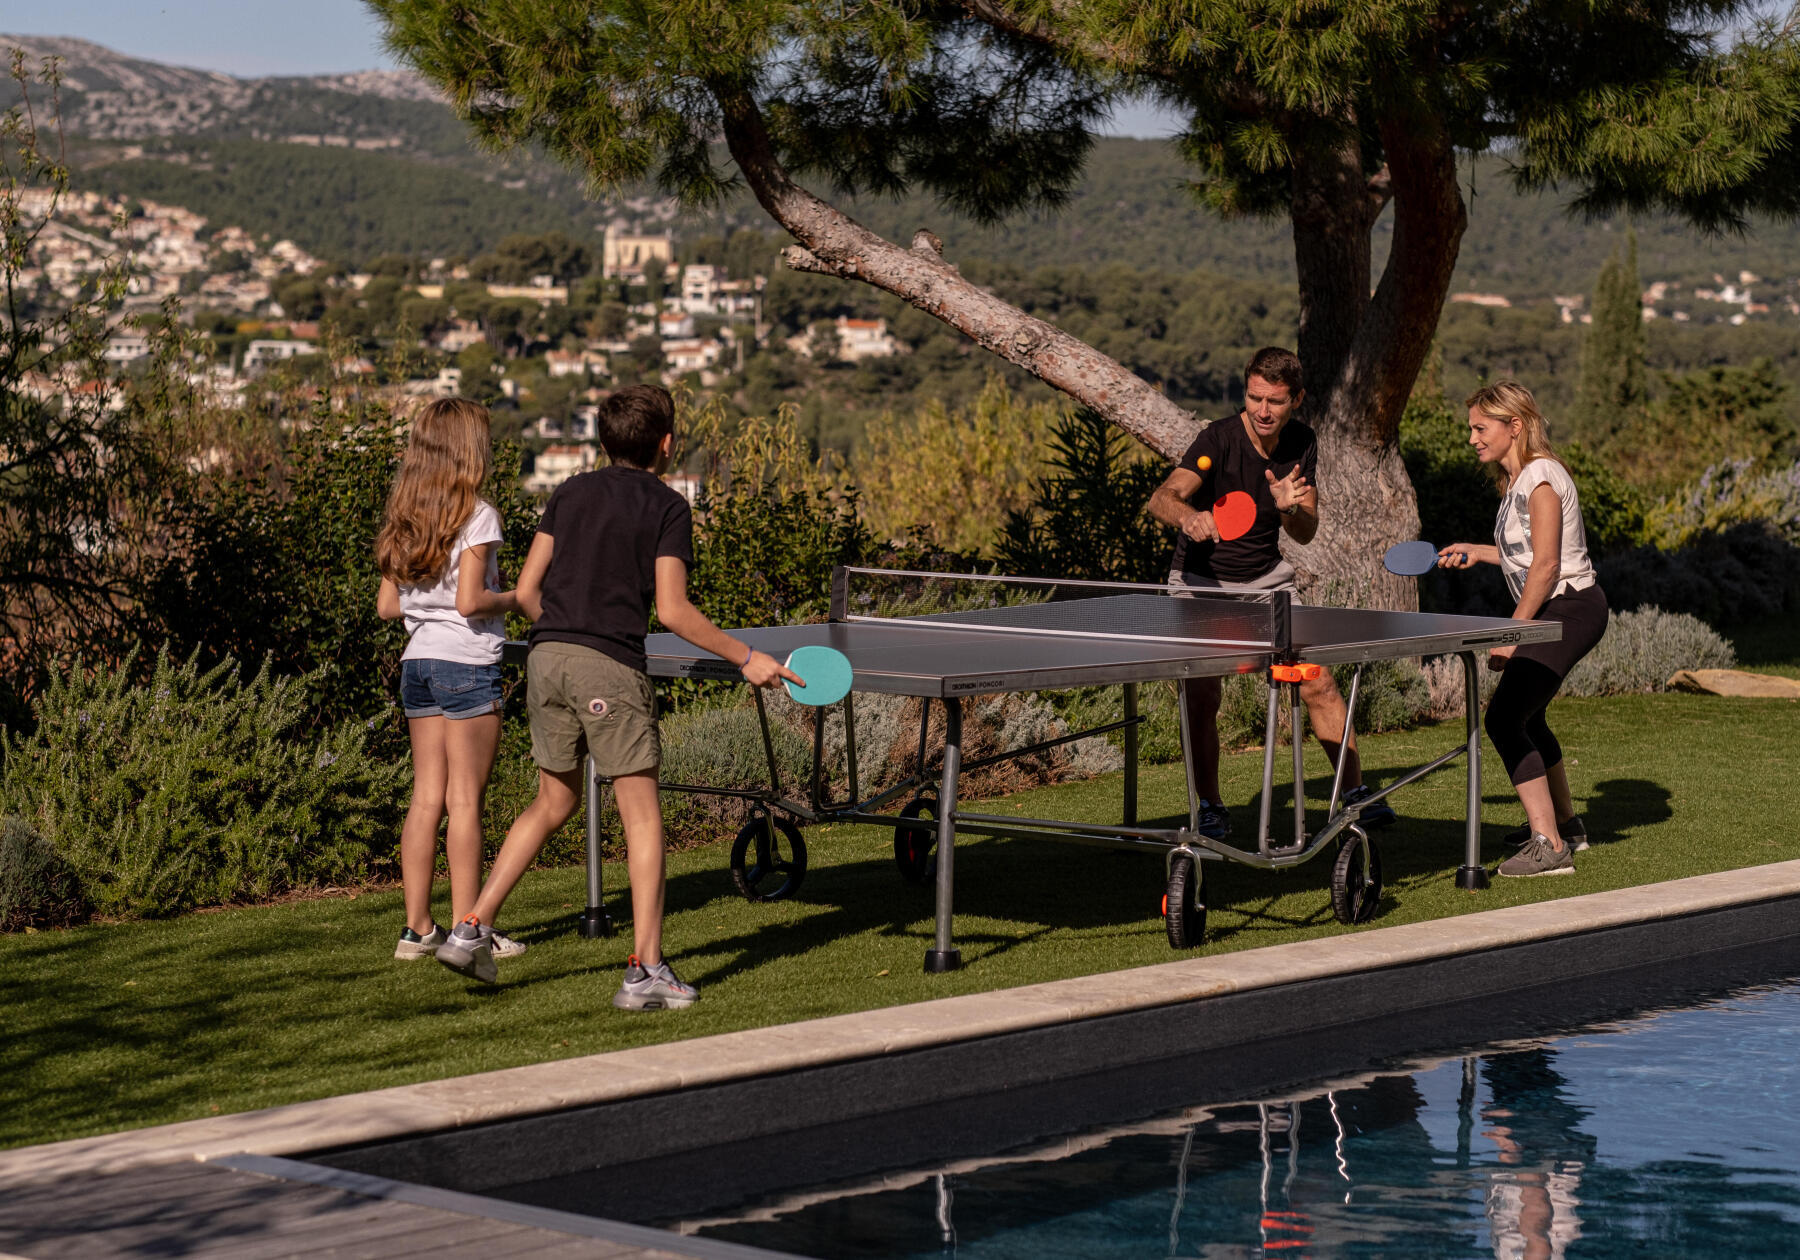 Comment choisir une table de tennis de table ?